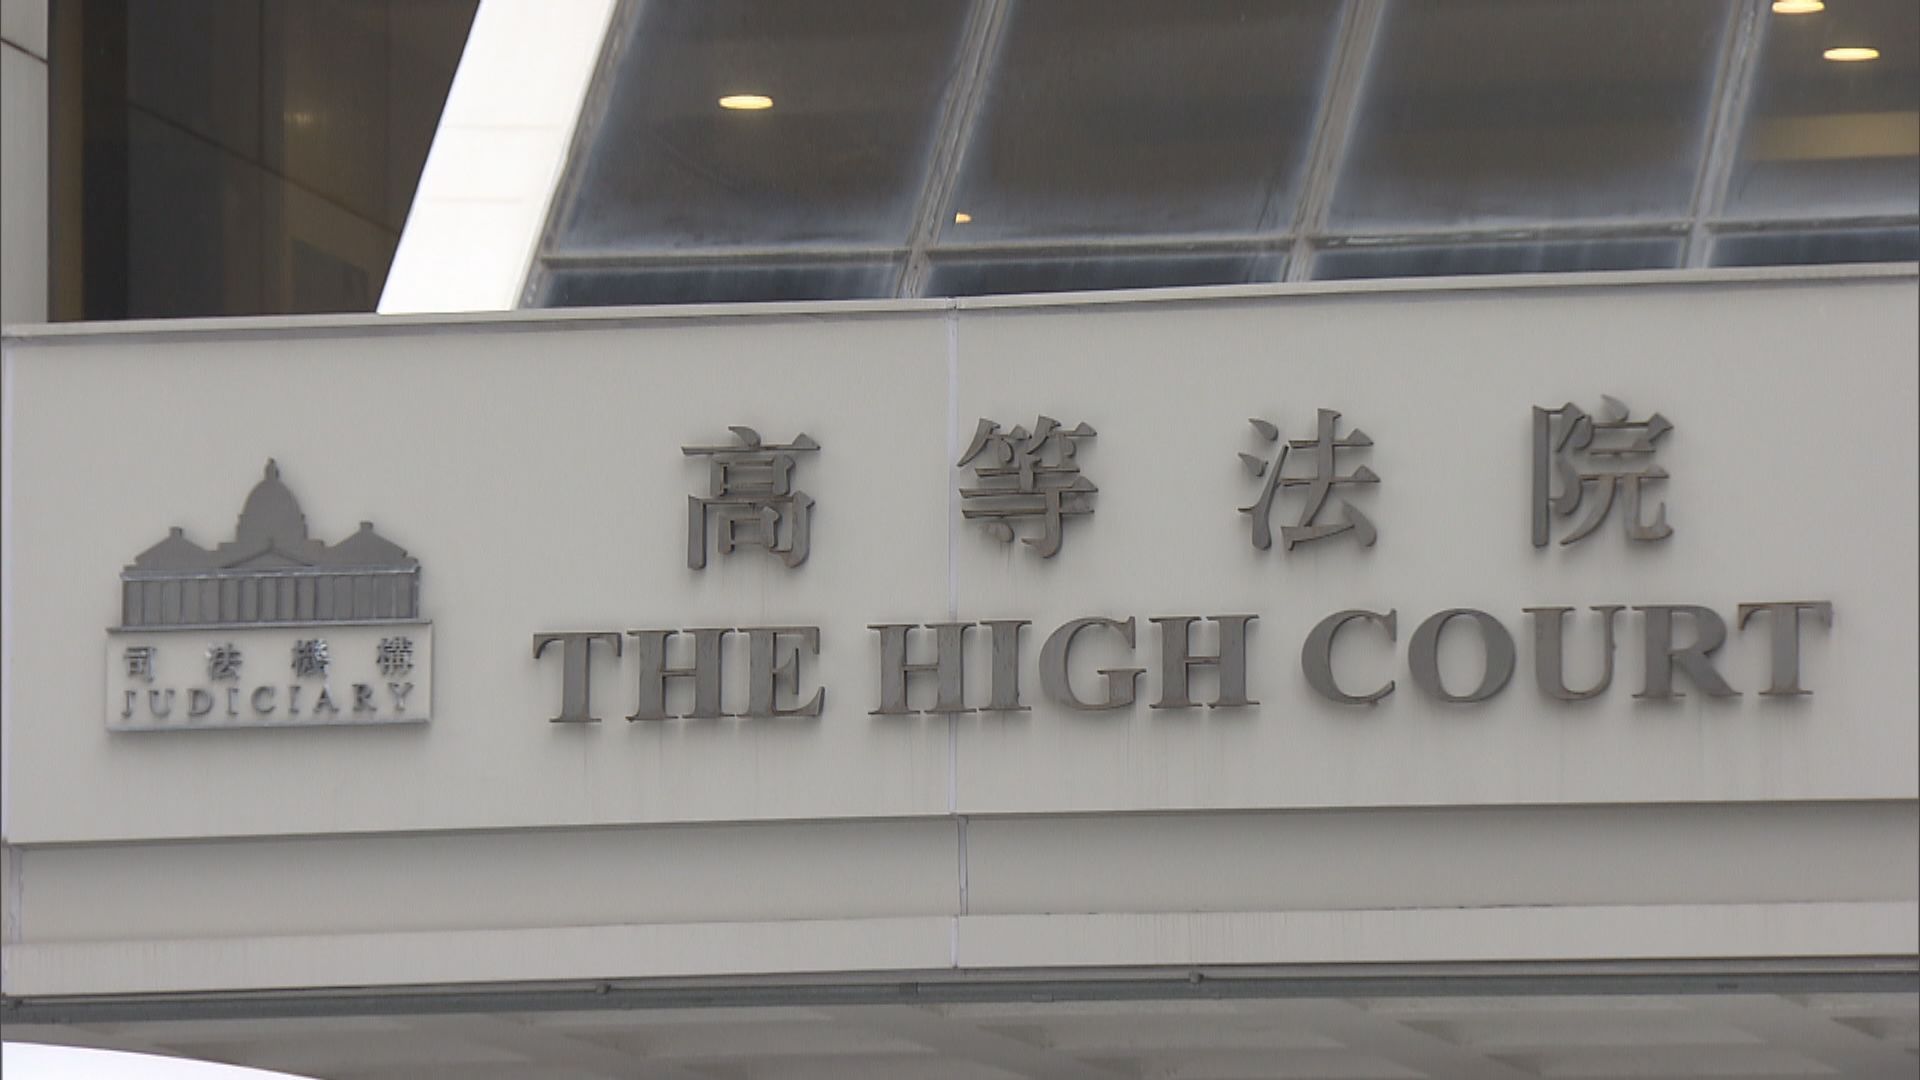 高院處理《願榮光歸香港》禁制令 下周五裁決